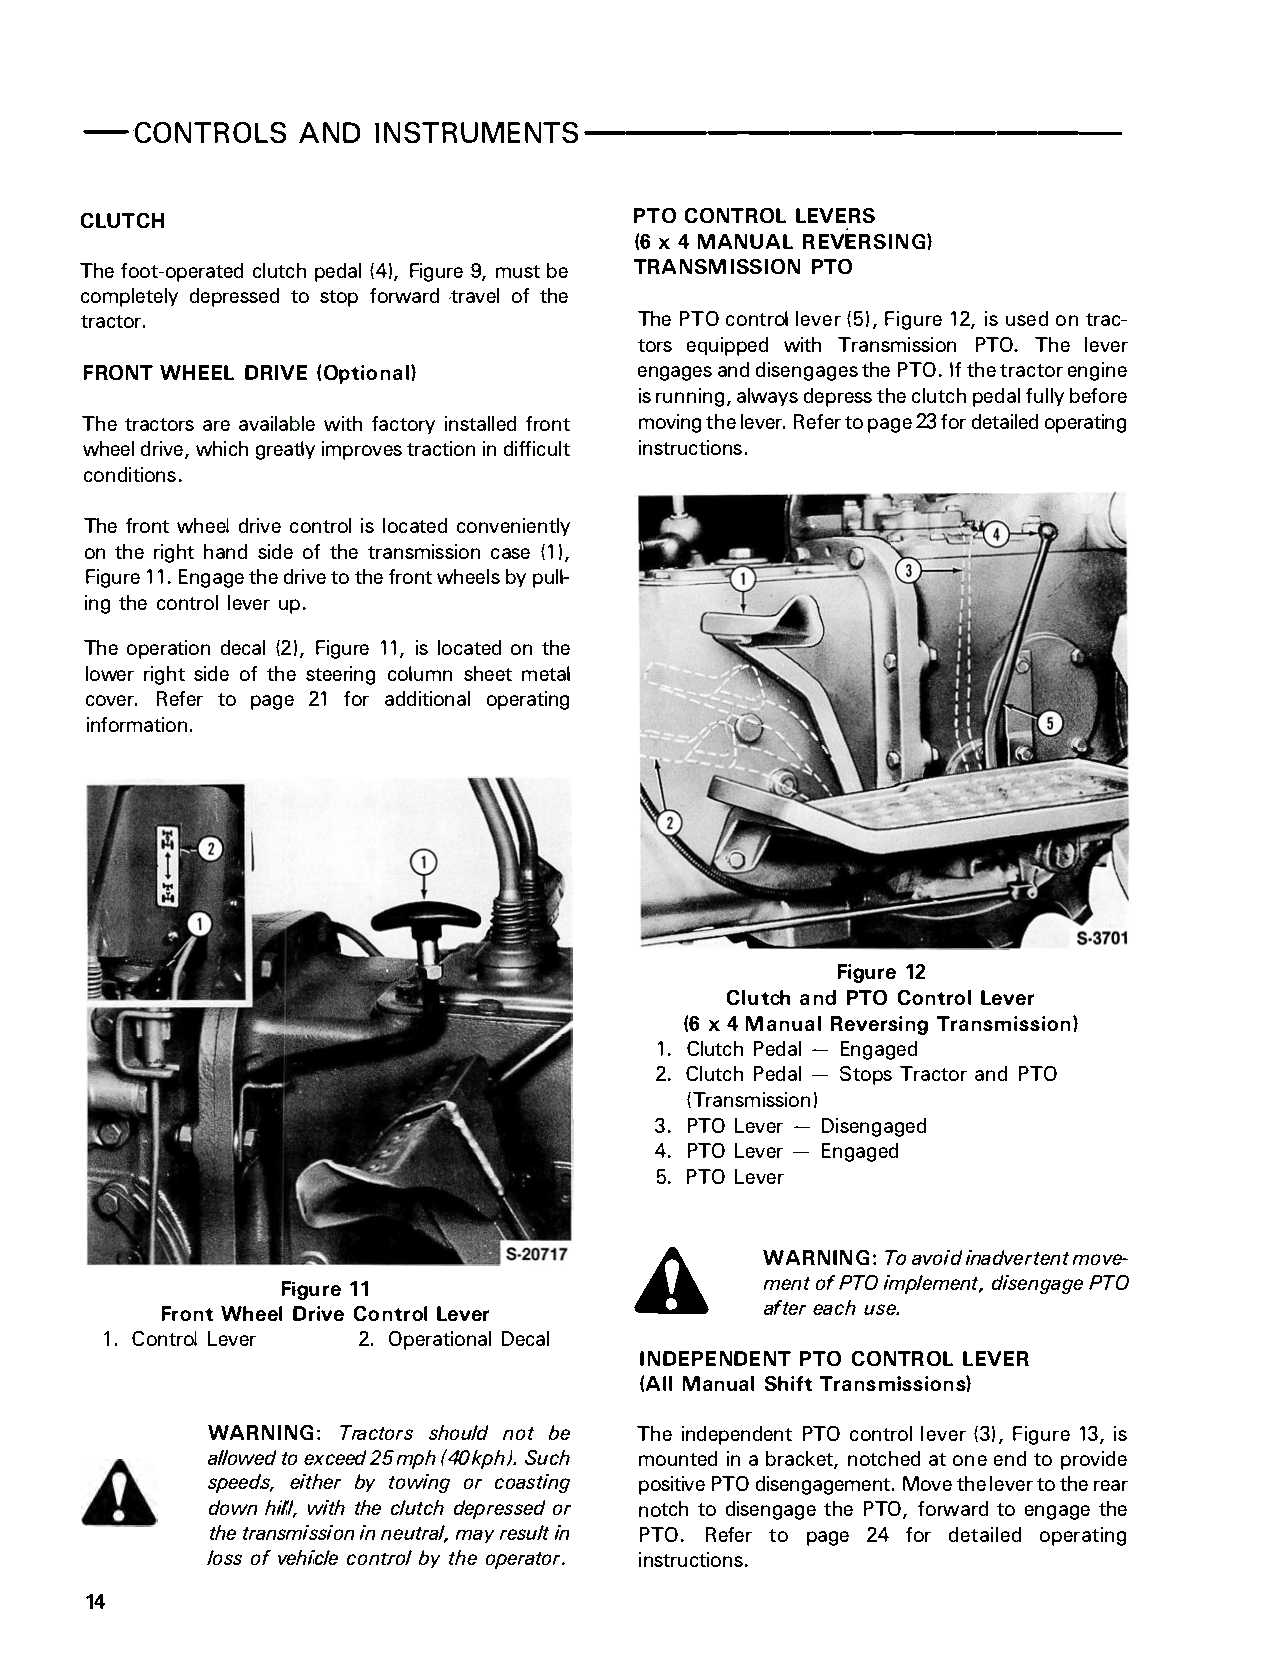 Ford 2810, 2910, 3910, 4610 & 4610SU Tractors Operator's Manual